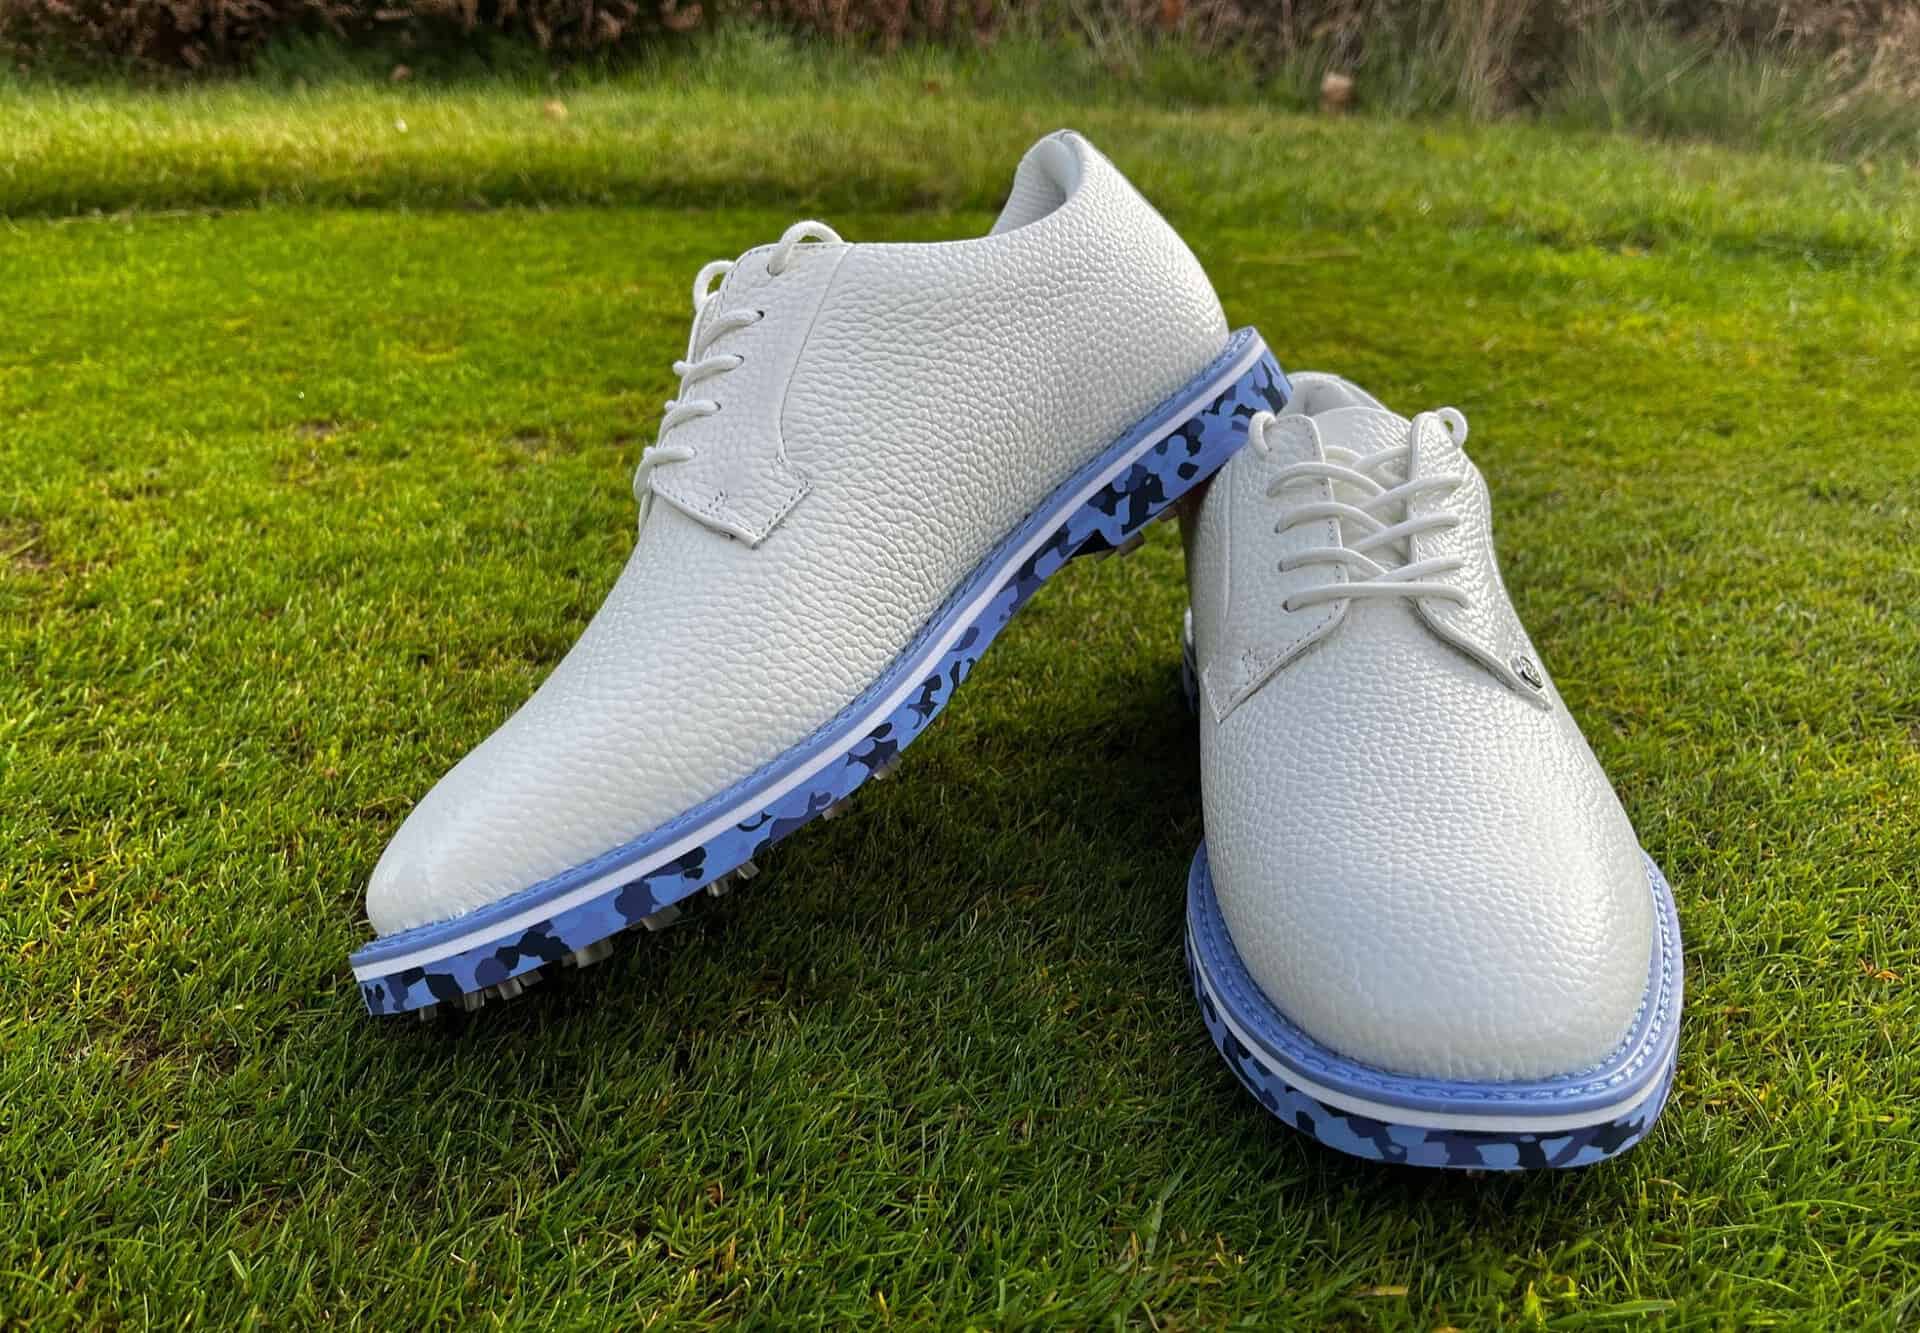 G Fore Camo Gallivanter Golf Shoes Review